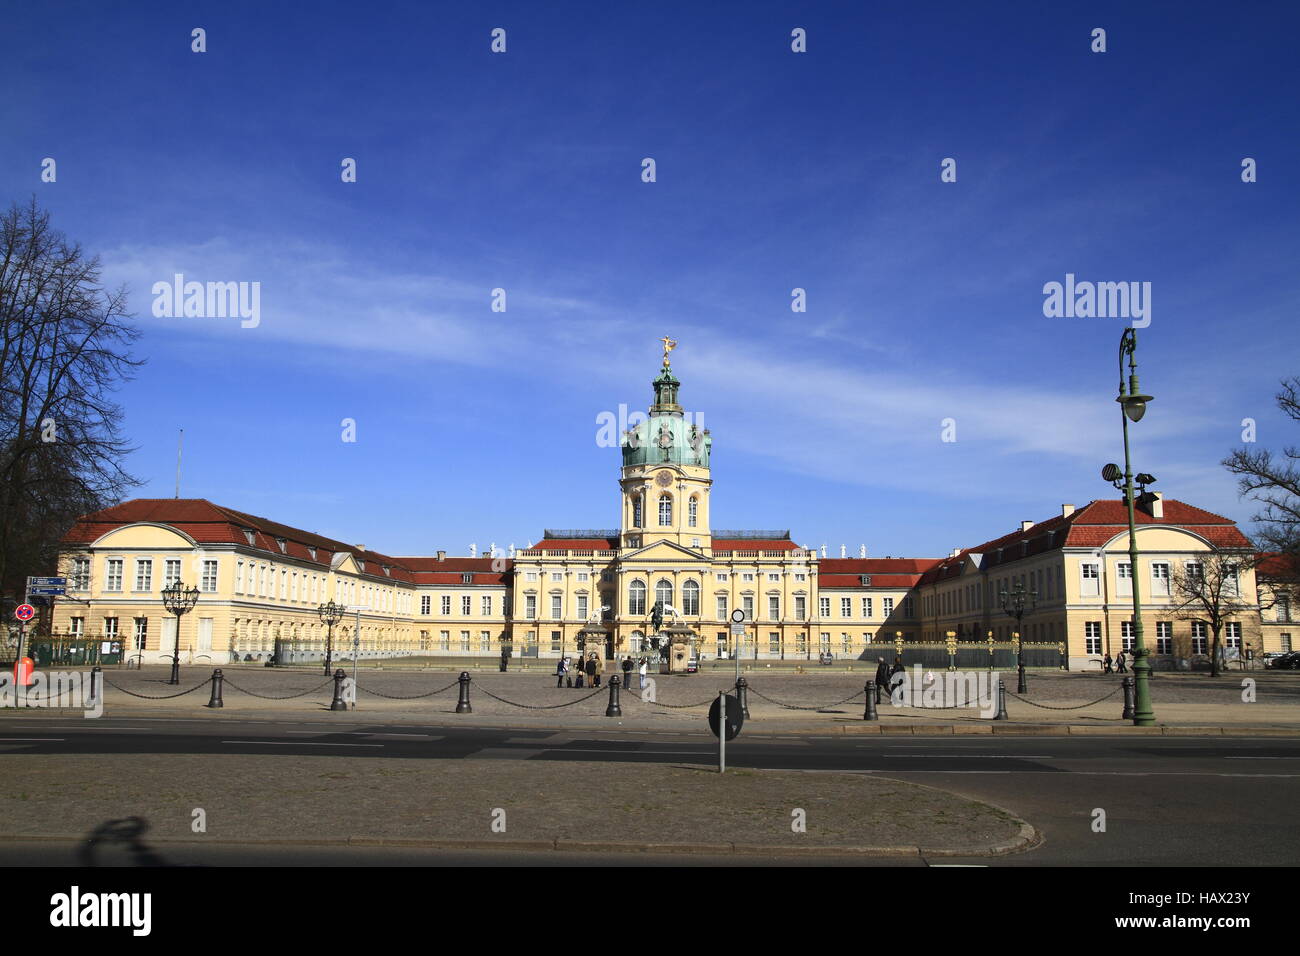 Das Schloss Charlottenburg Stock Photo